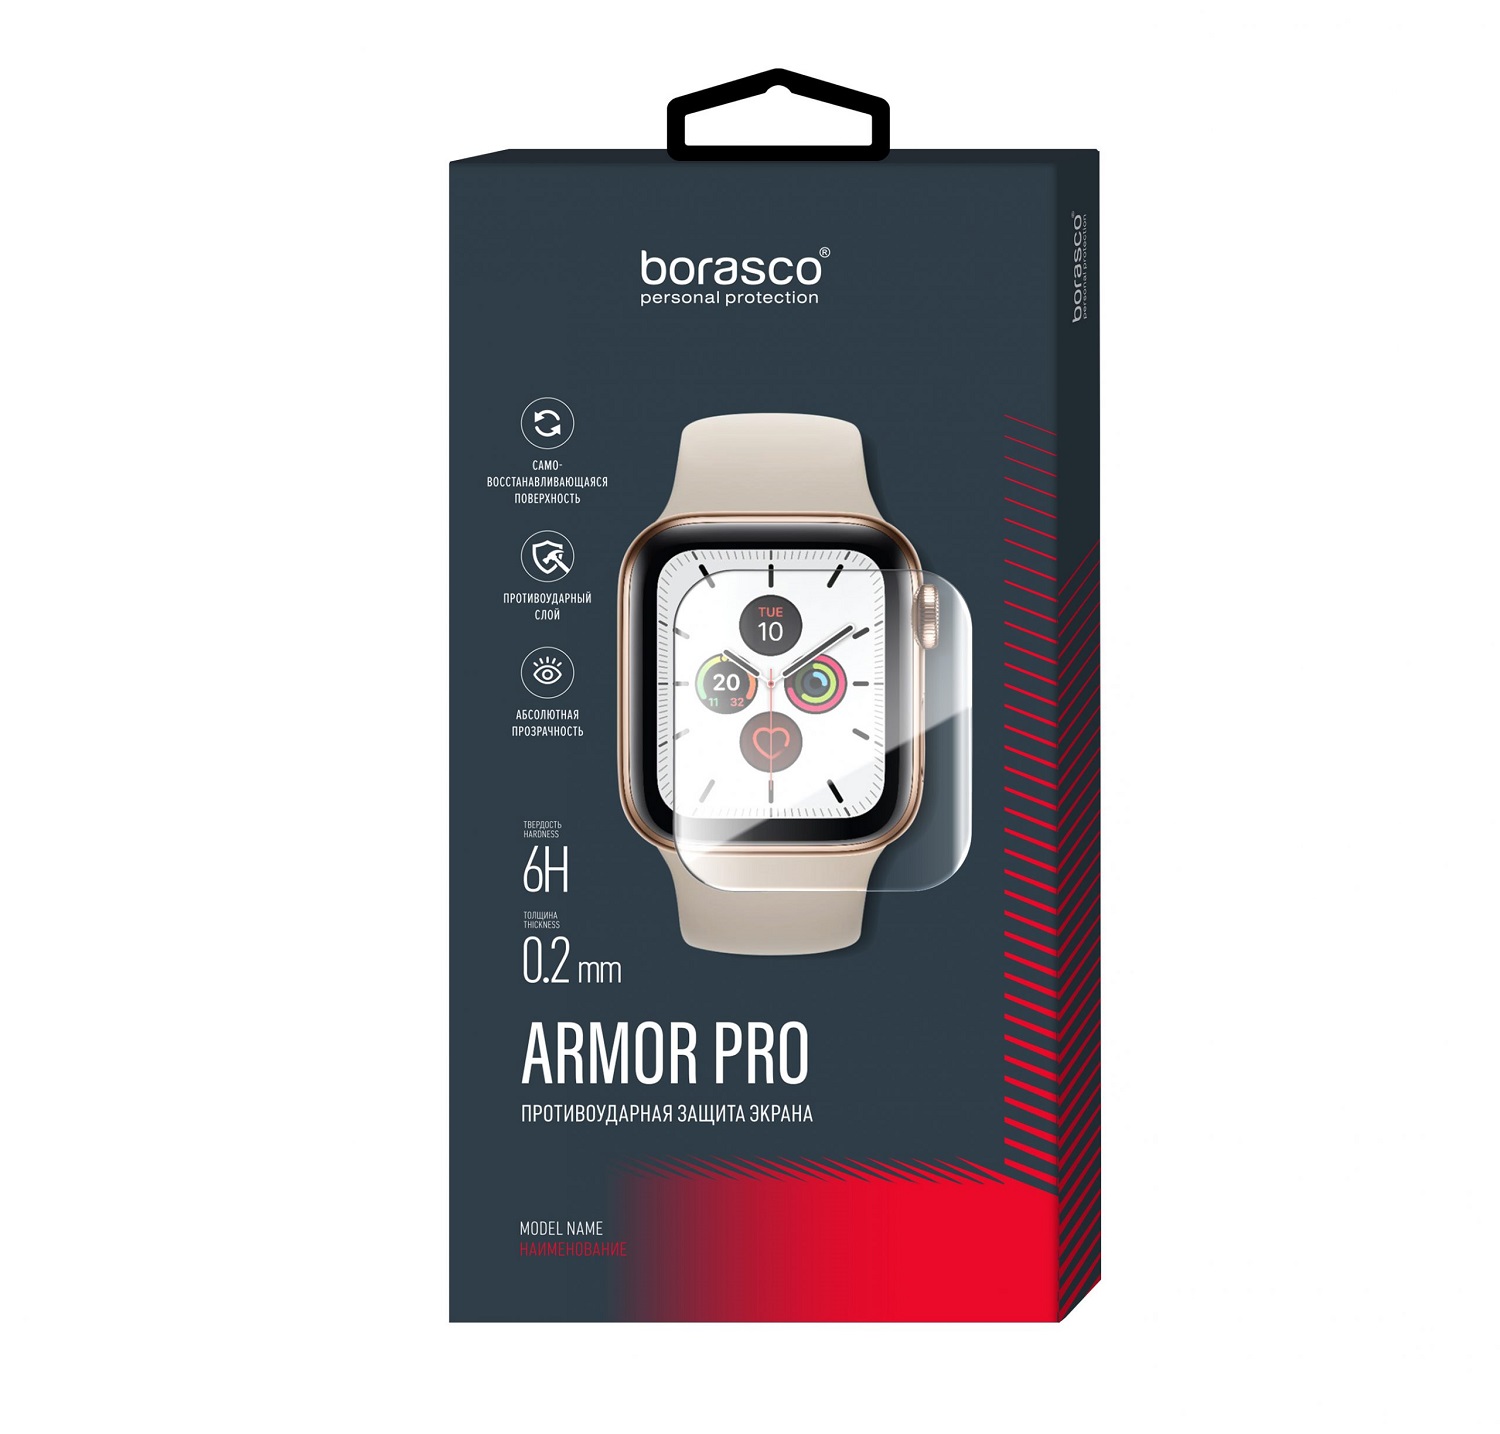 Защита экрана BoraSCO Armor Pro для Xiaomi Mi band 2 защита экрана borasco armor pro для honor band 6